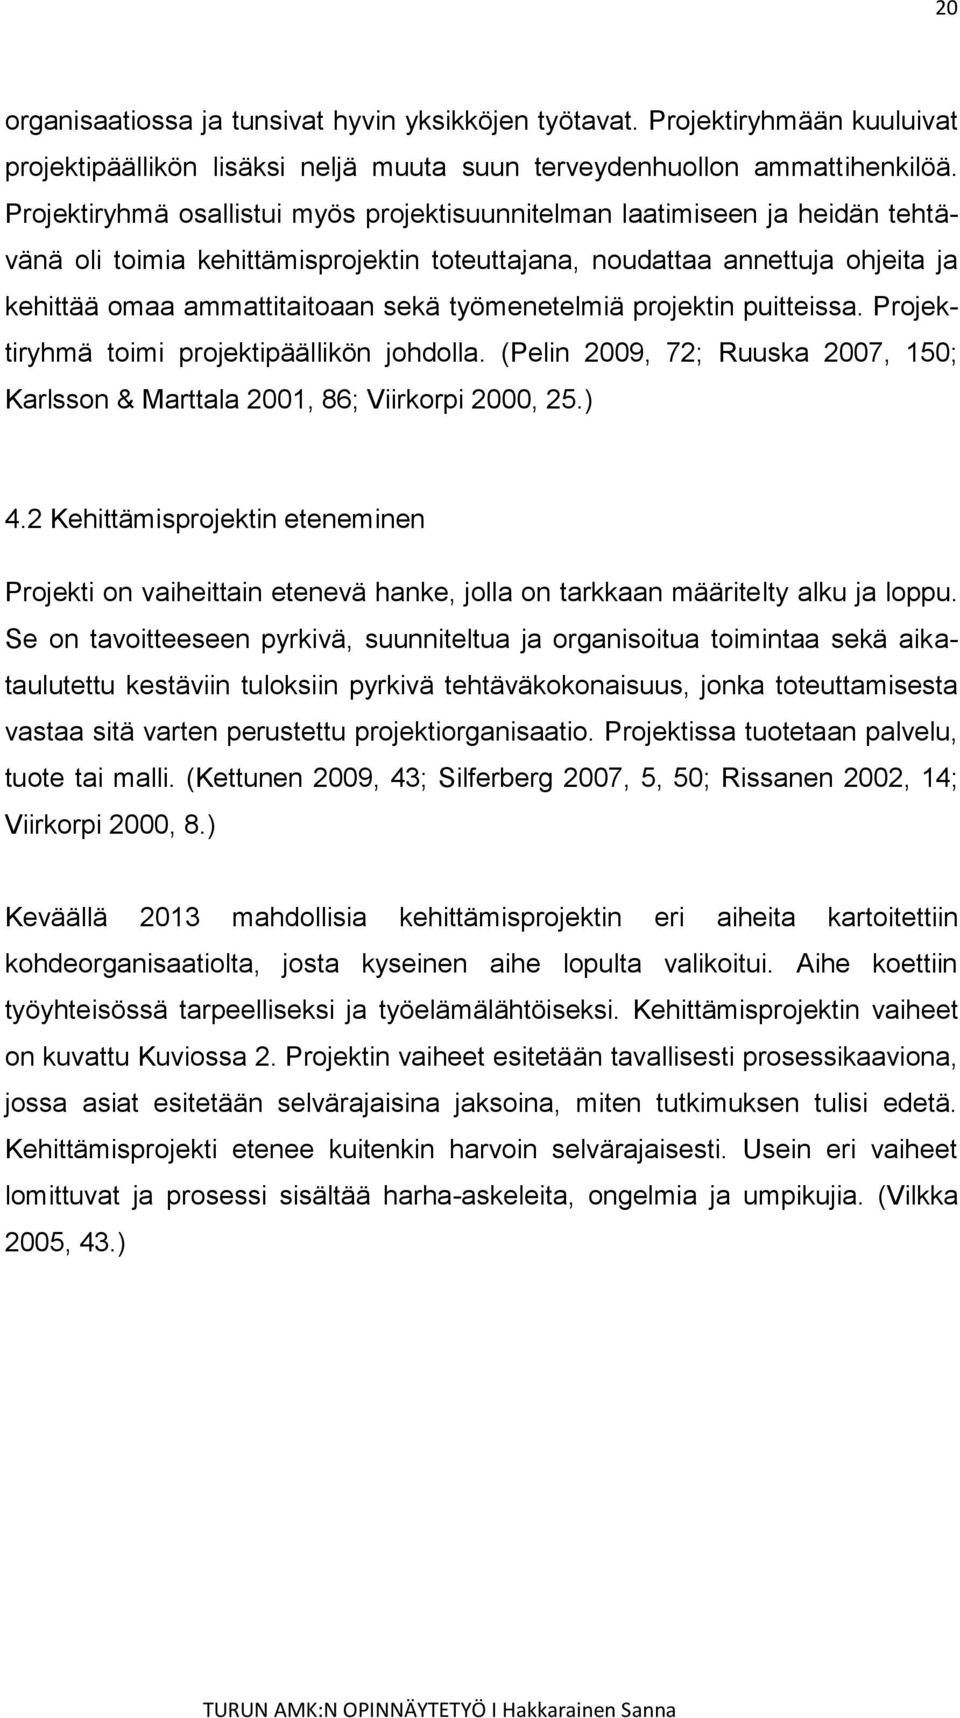 työmenetelmiä projektin puitteissa. Projektiryhmä toimi projektipäällikön johdolla. (Pelin 2009, 72; Ruuska 2007, 150; Karlsson & Marttala 2001, 86; Viirkorpi 2000, 25.) 4.